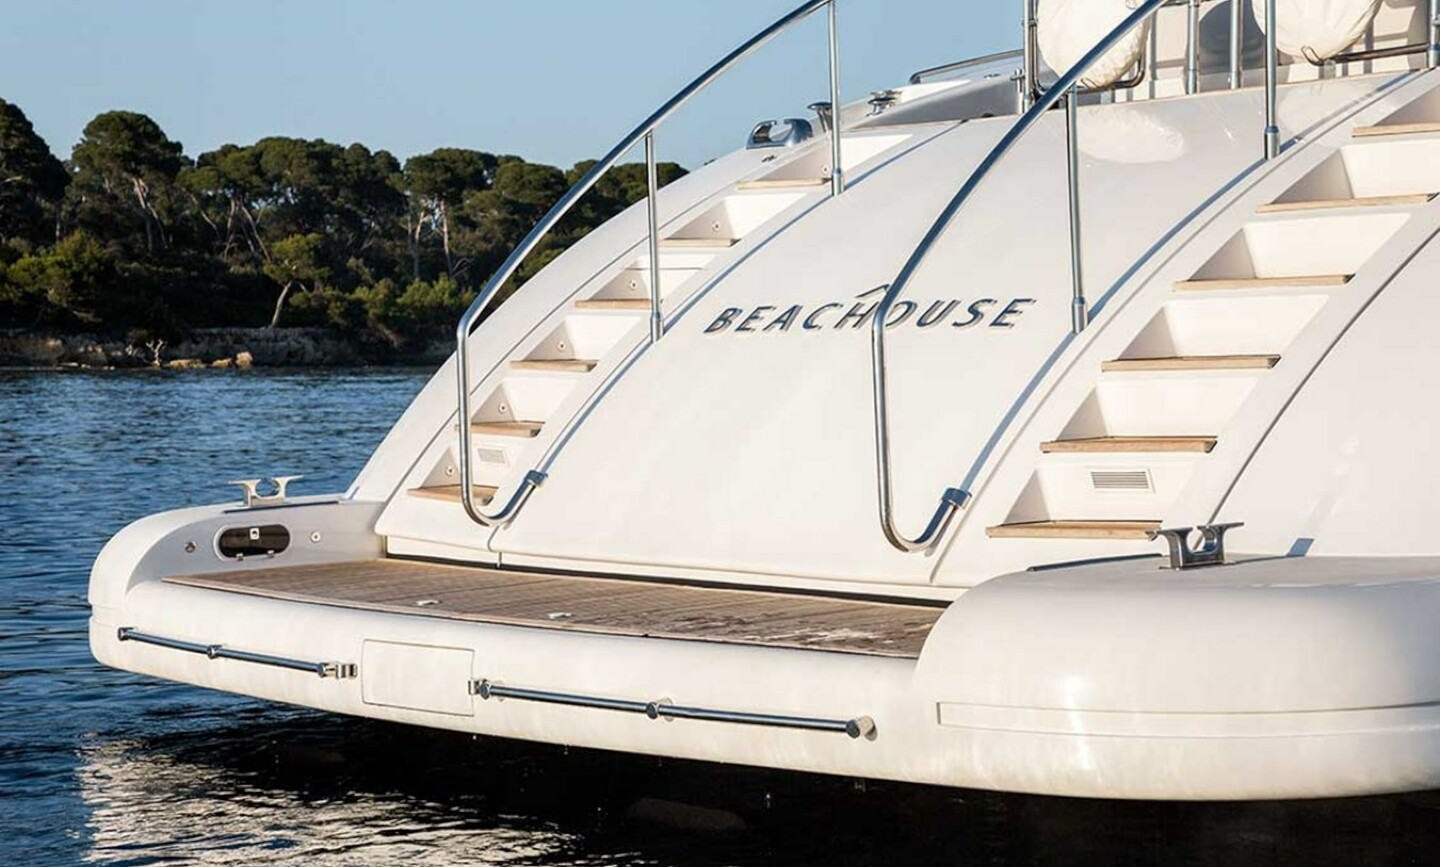 Beachouse yacht for Sale 26